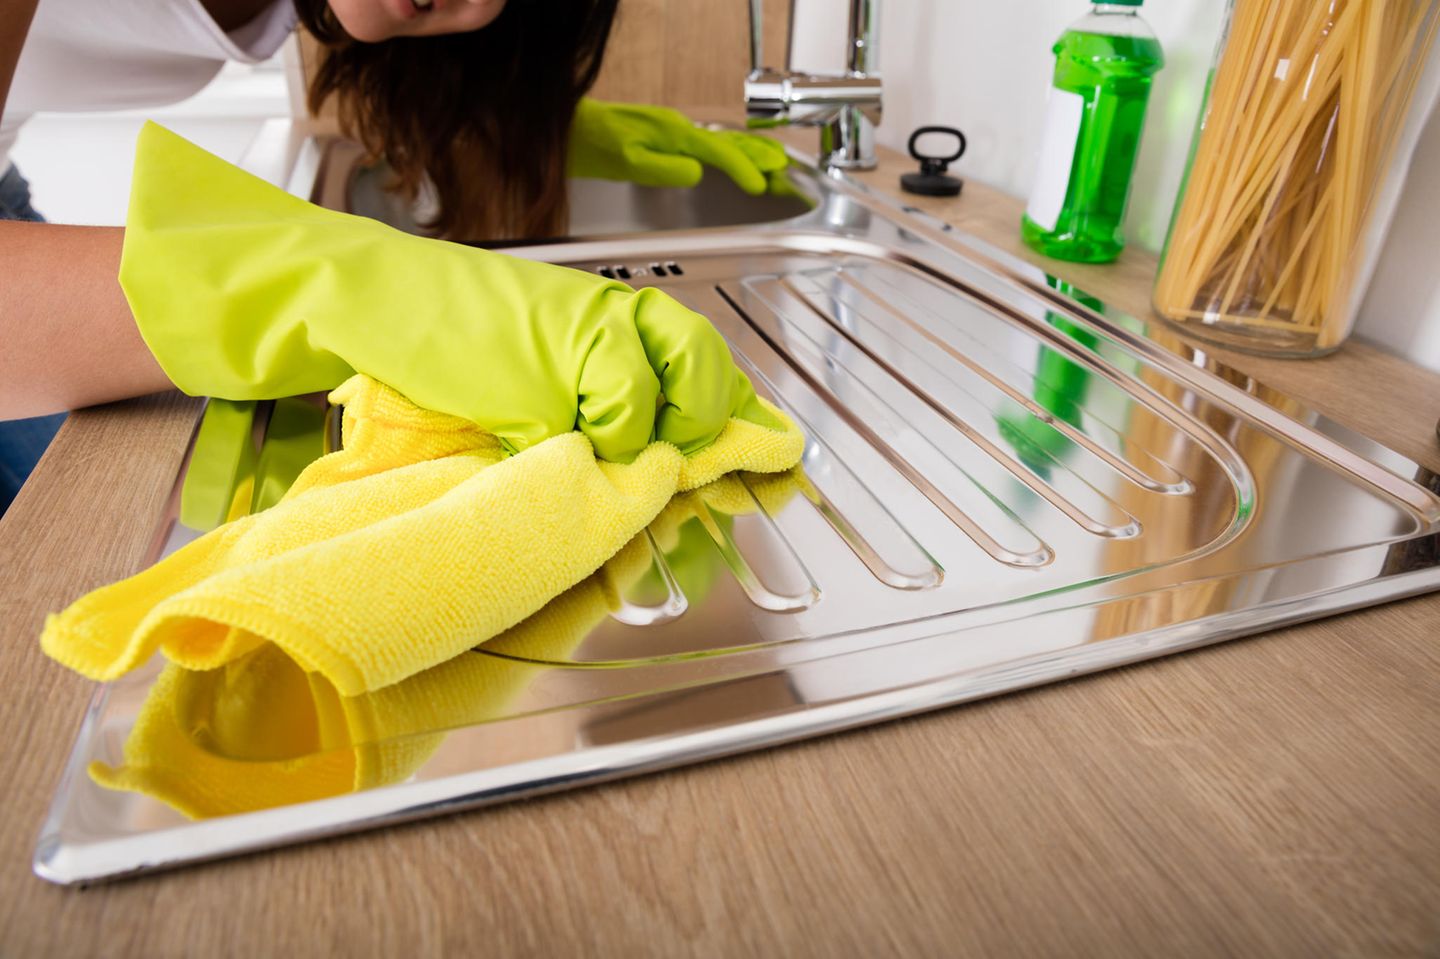 Studie zu Ordnung und Rassismus: Eine Person putzt eine Küchenoberfläche (Symbolbild)